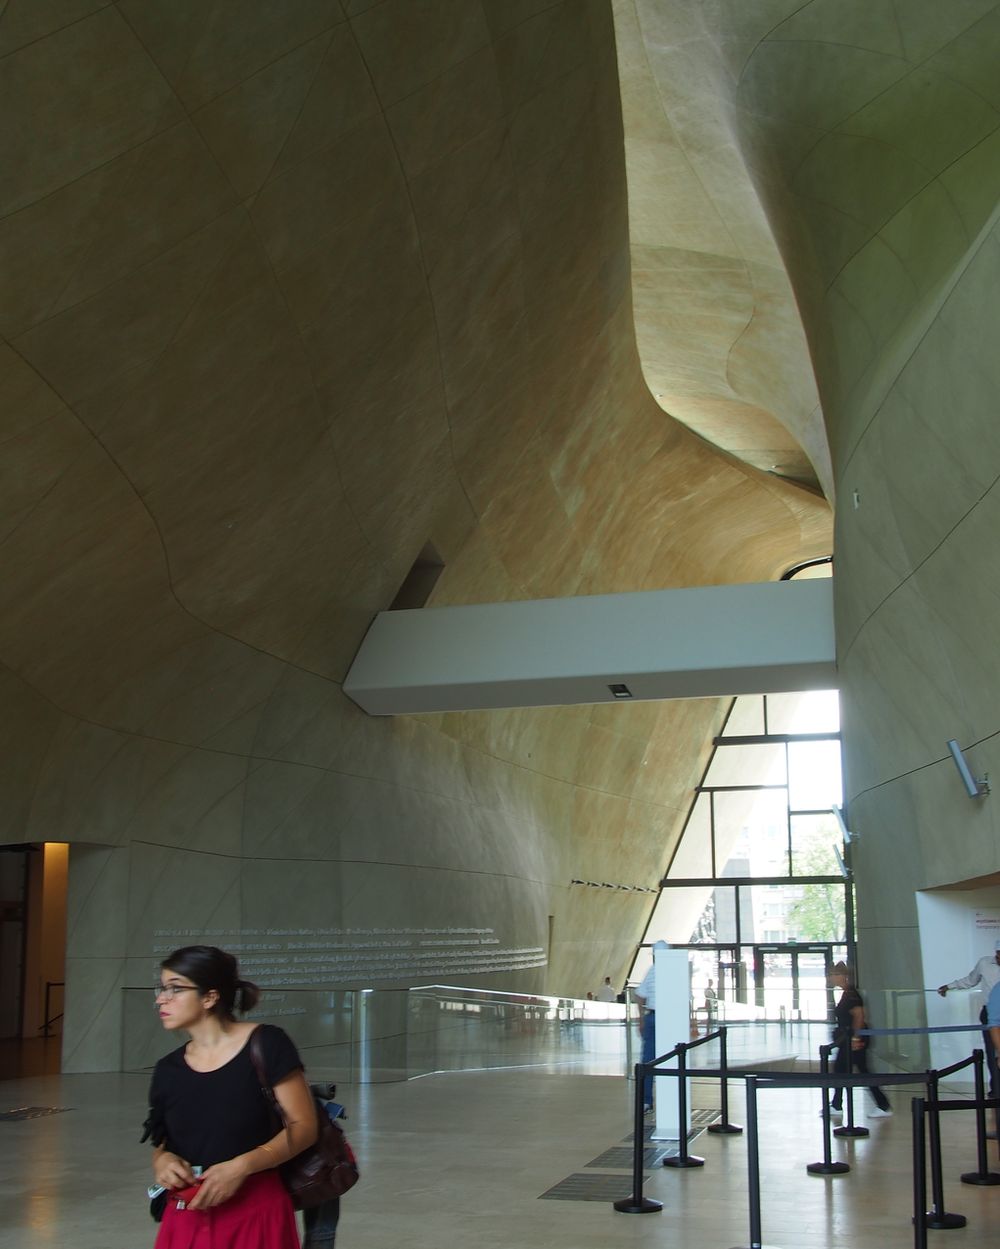 Lenkijos žydų istorijos muziejus „Polin“ Varšuvoje (arch. „Lahdelma & Mahlamäki Architects“) 2014 metais nusipelnė suomių architektūros apdovanojimo „Finlandia“, o 2016-aisiais – gavo „Europos muziejaus apdovanojimą“. Foto: ©PILOTAS.LT